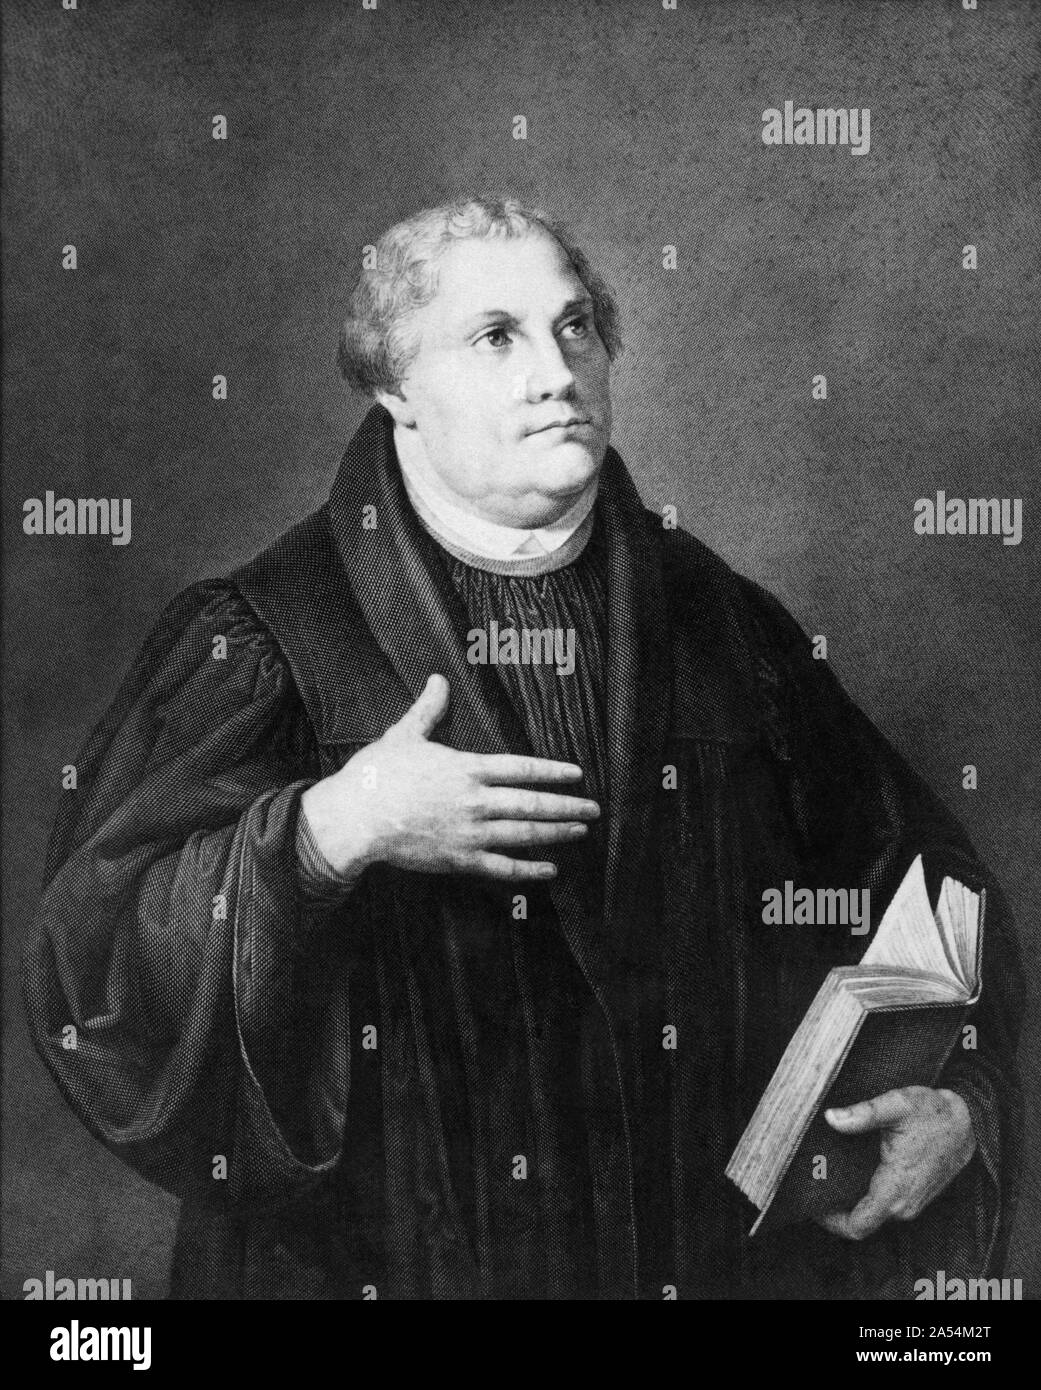 Martin Luther (1483-1546), le professeur allemand, théologien et figure clé de la Réforme protestante, ainsi qu'un traducteur de la Bible en langue vernaculaire allemand. (Gravure d'un portrait par Lucas Cranach.) Banque D'Images